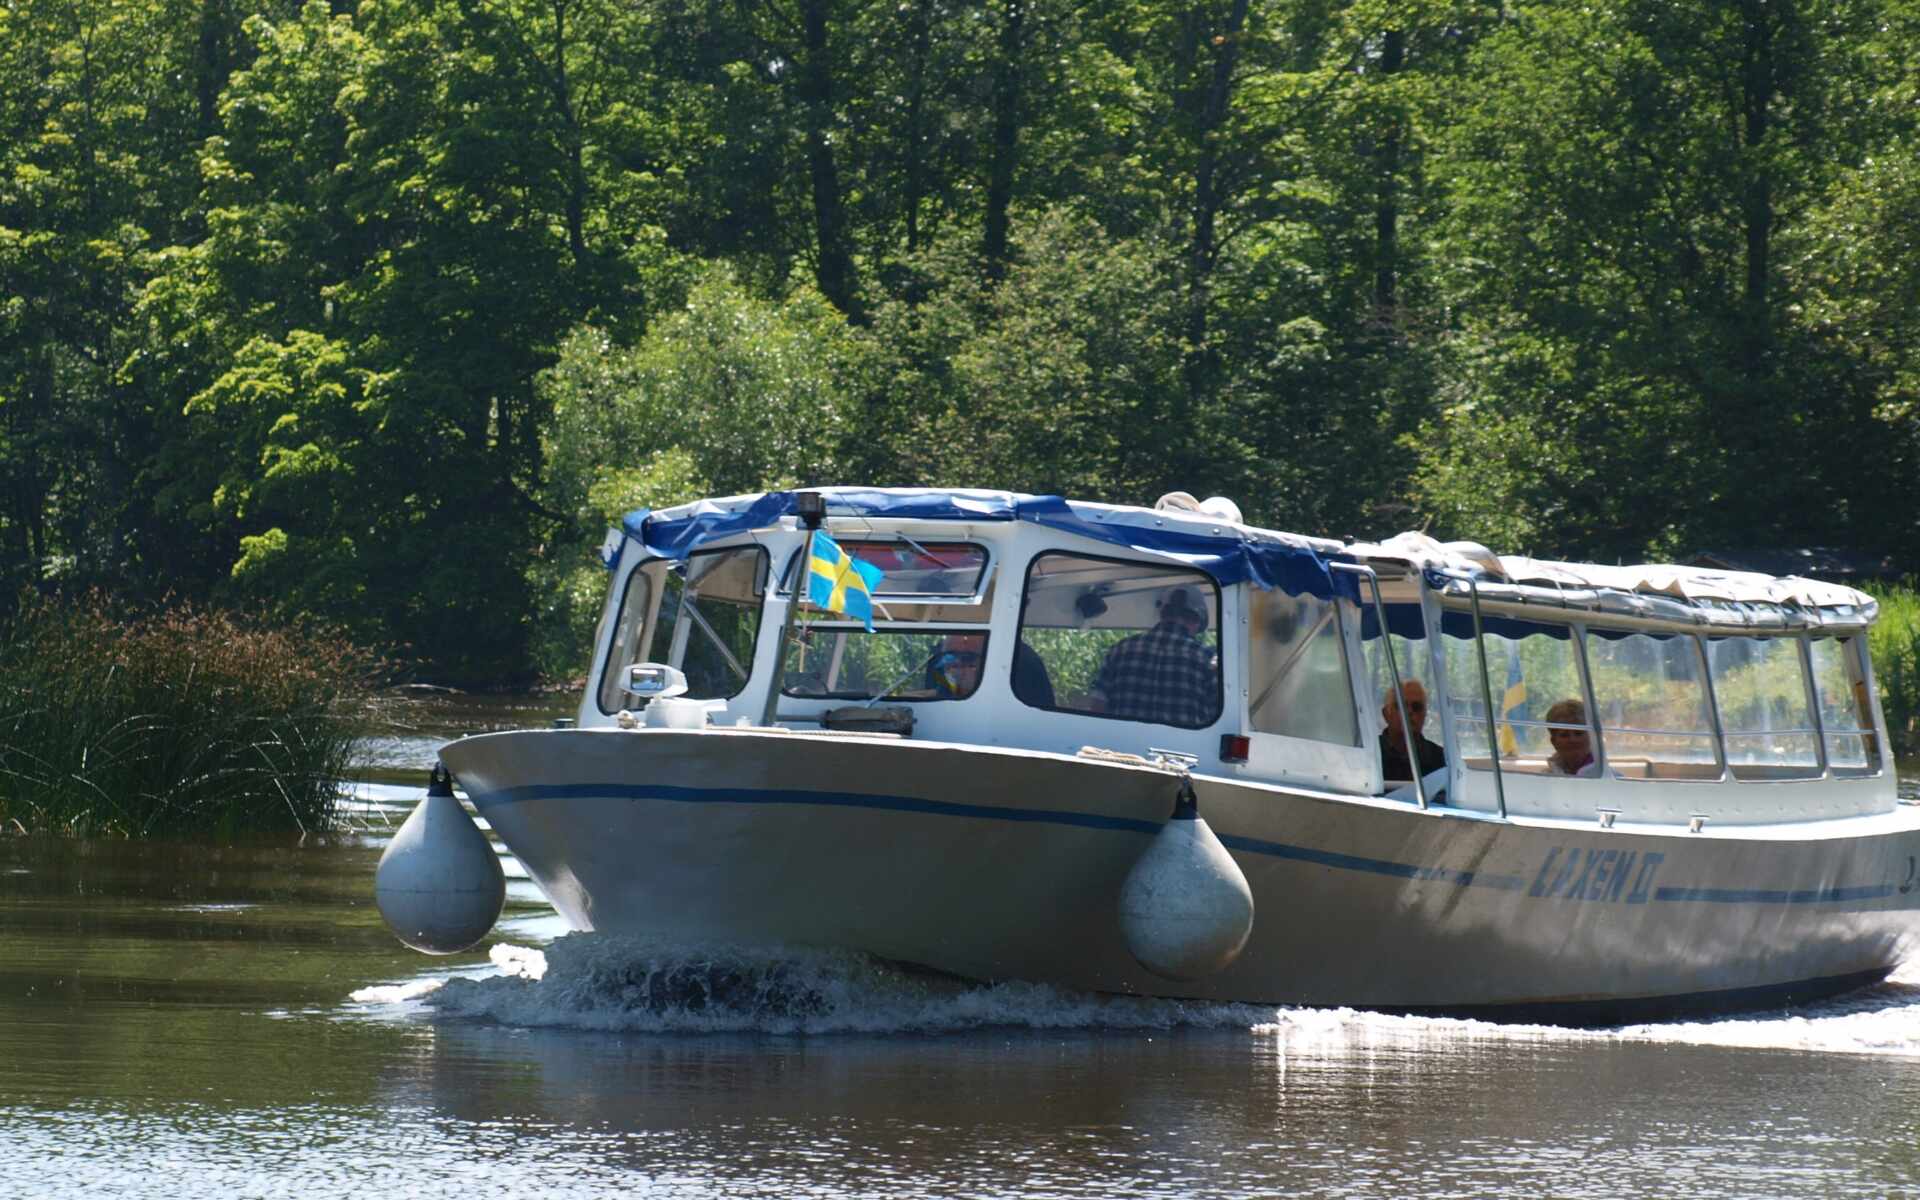  Guidad tur på Rönne å med turistbåten Laxen